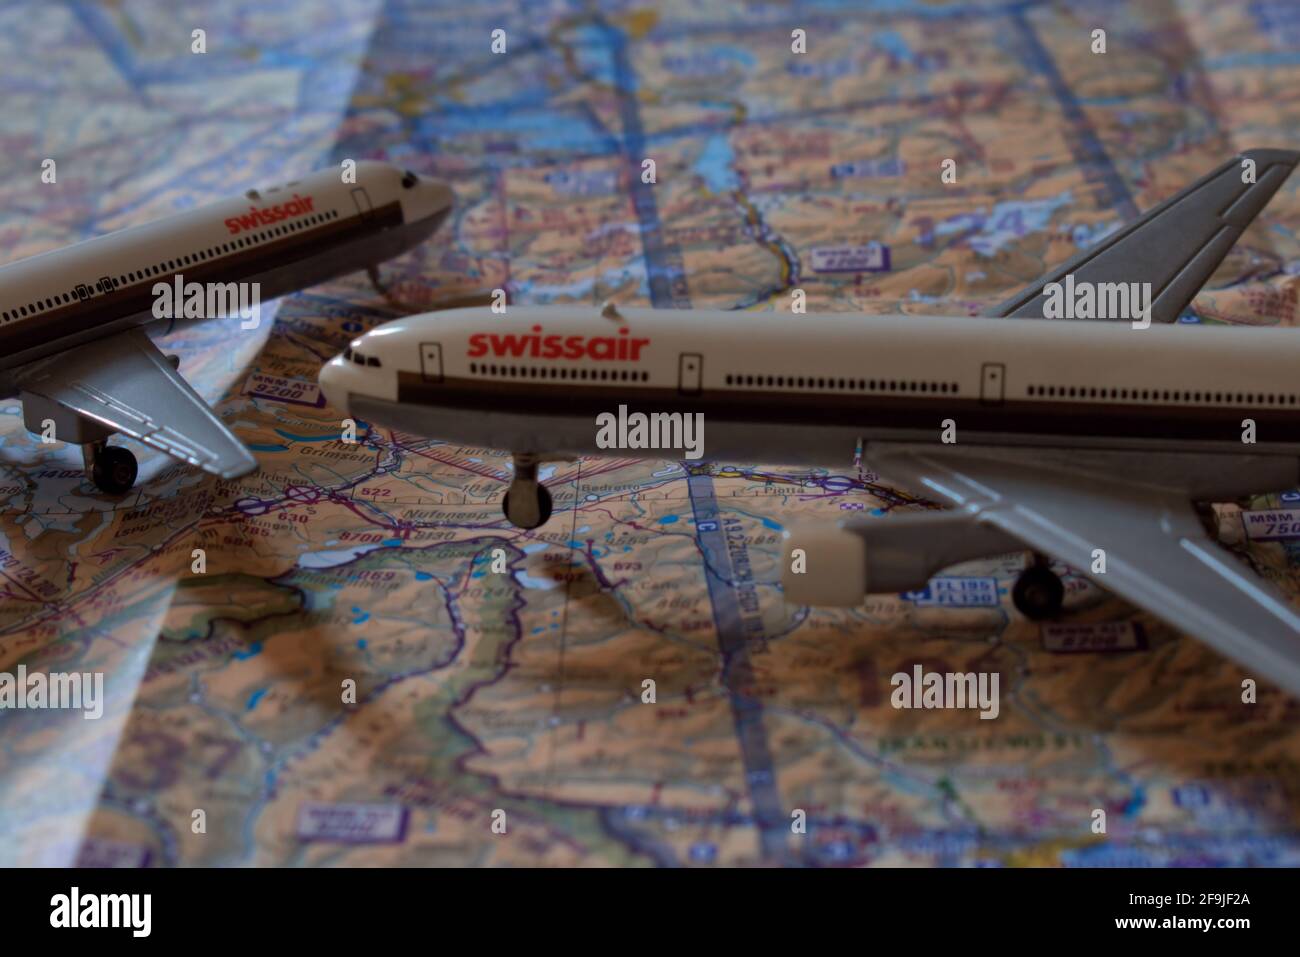 Jouets d'avion de Swissair placés sur une carte de navigation aérienne 25.3.2021 Banque D'Images